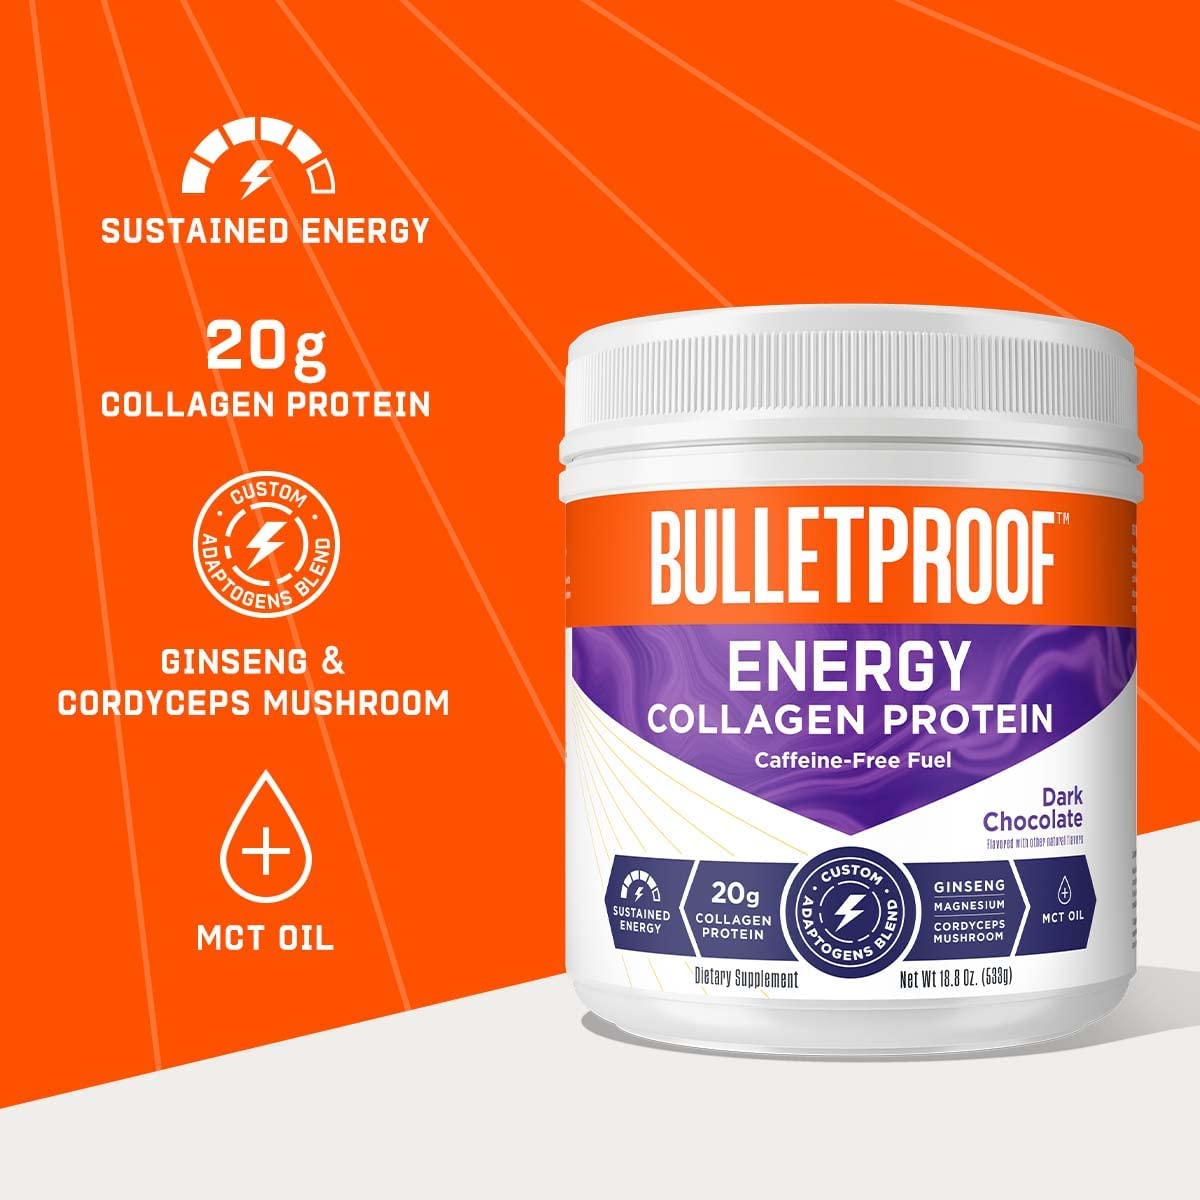 Bulletproof Energy Collagen Protein 530g